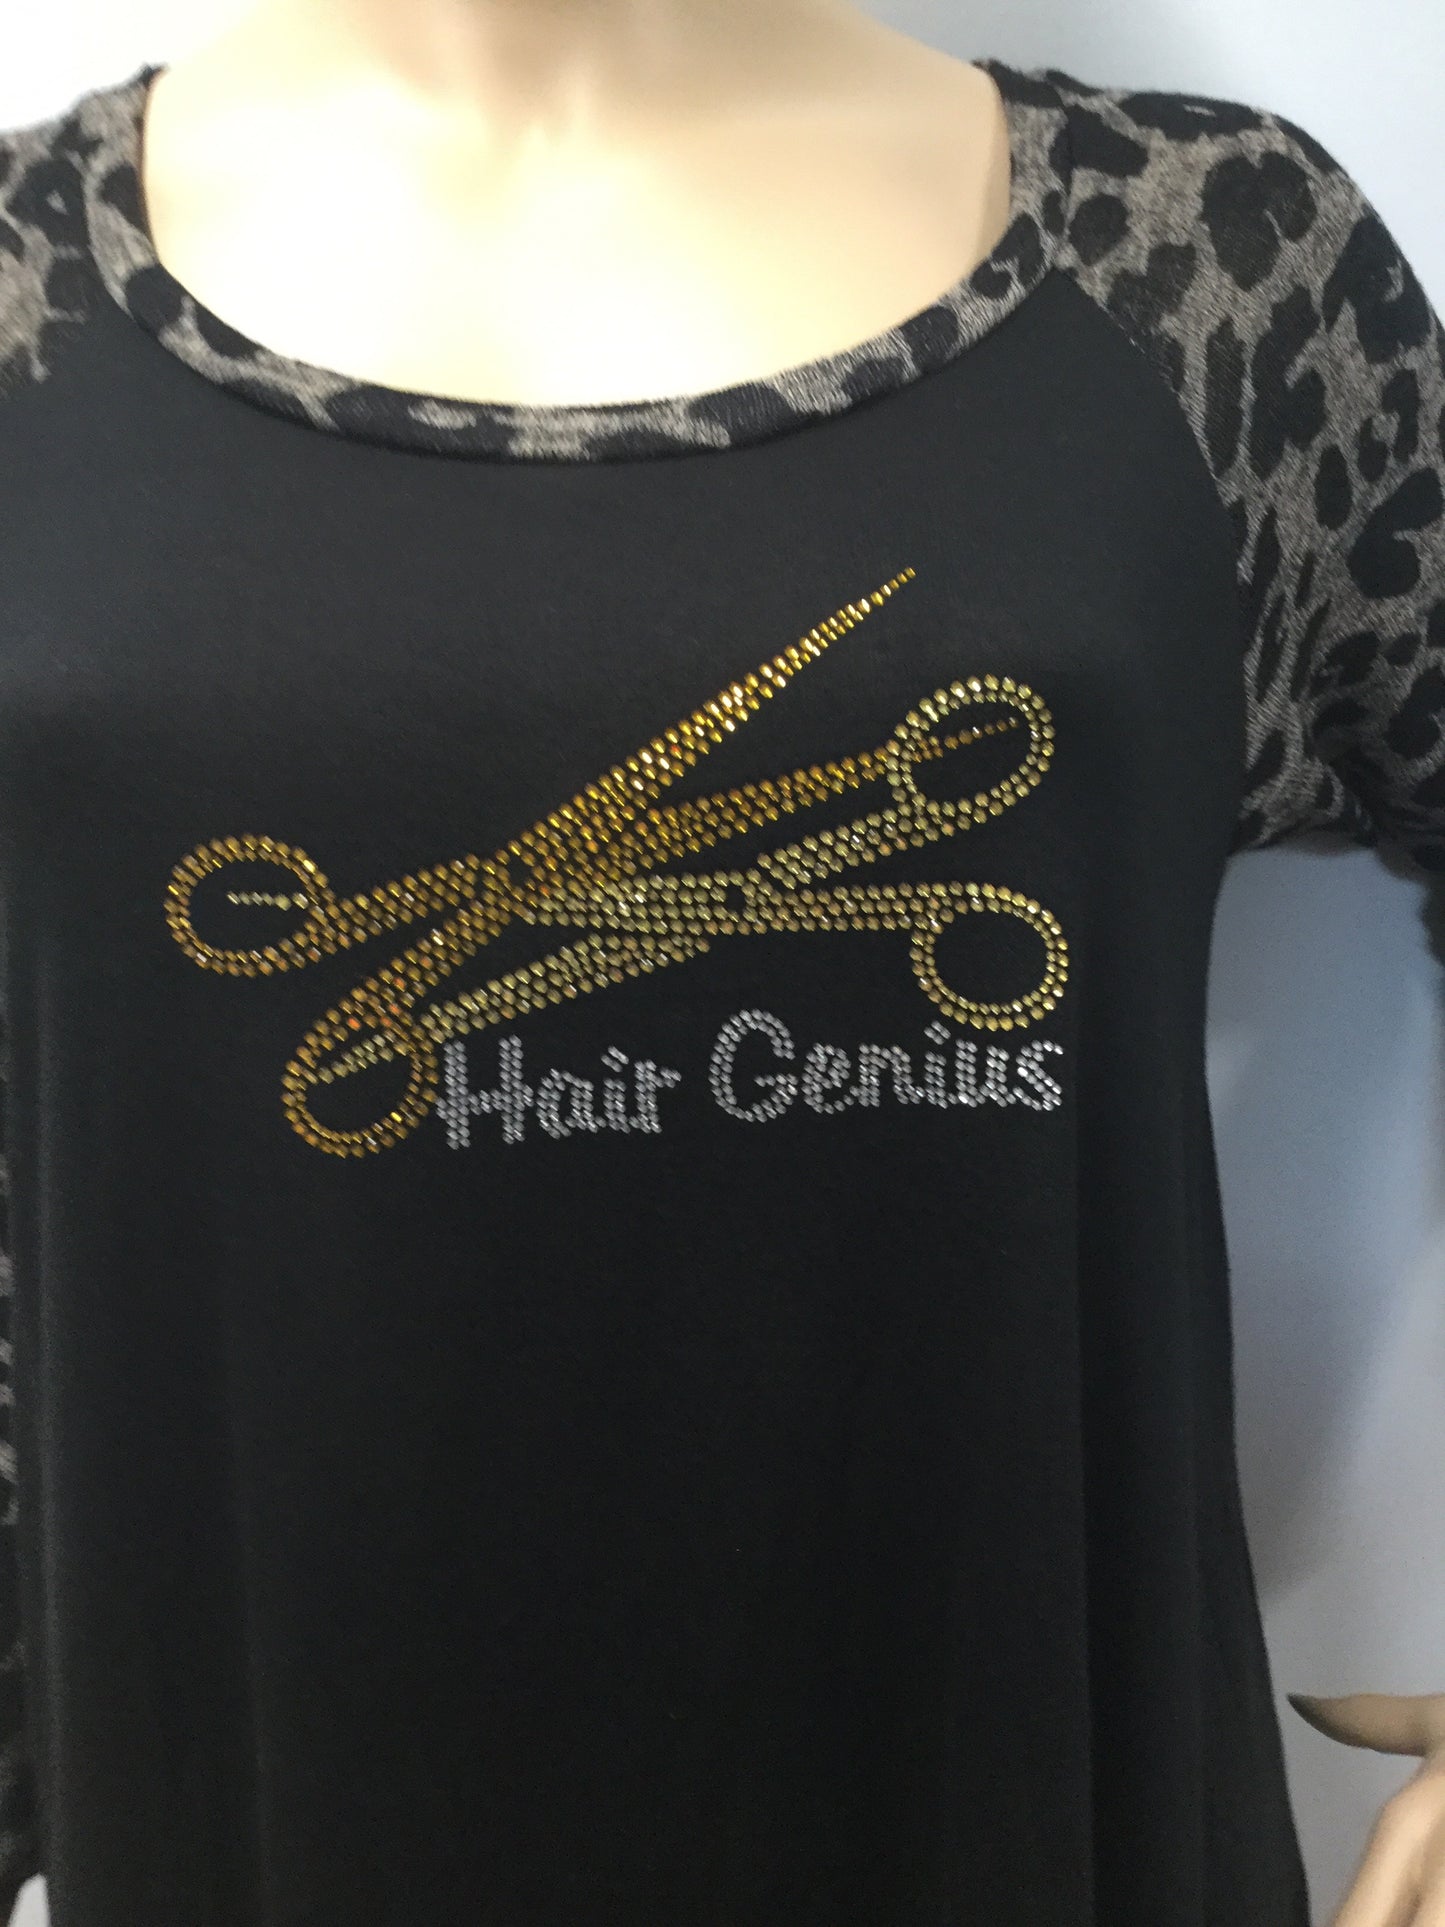 Plus Size Hair Genius Top with Cheetah  Sleeves